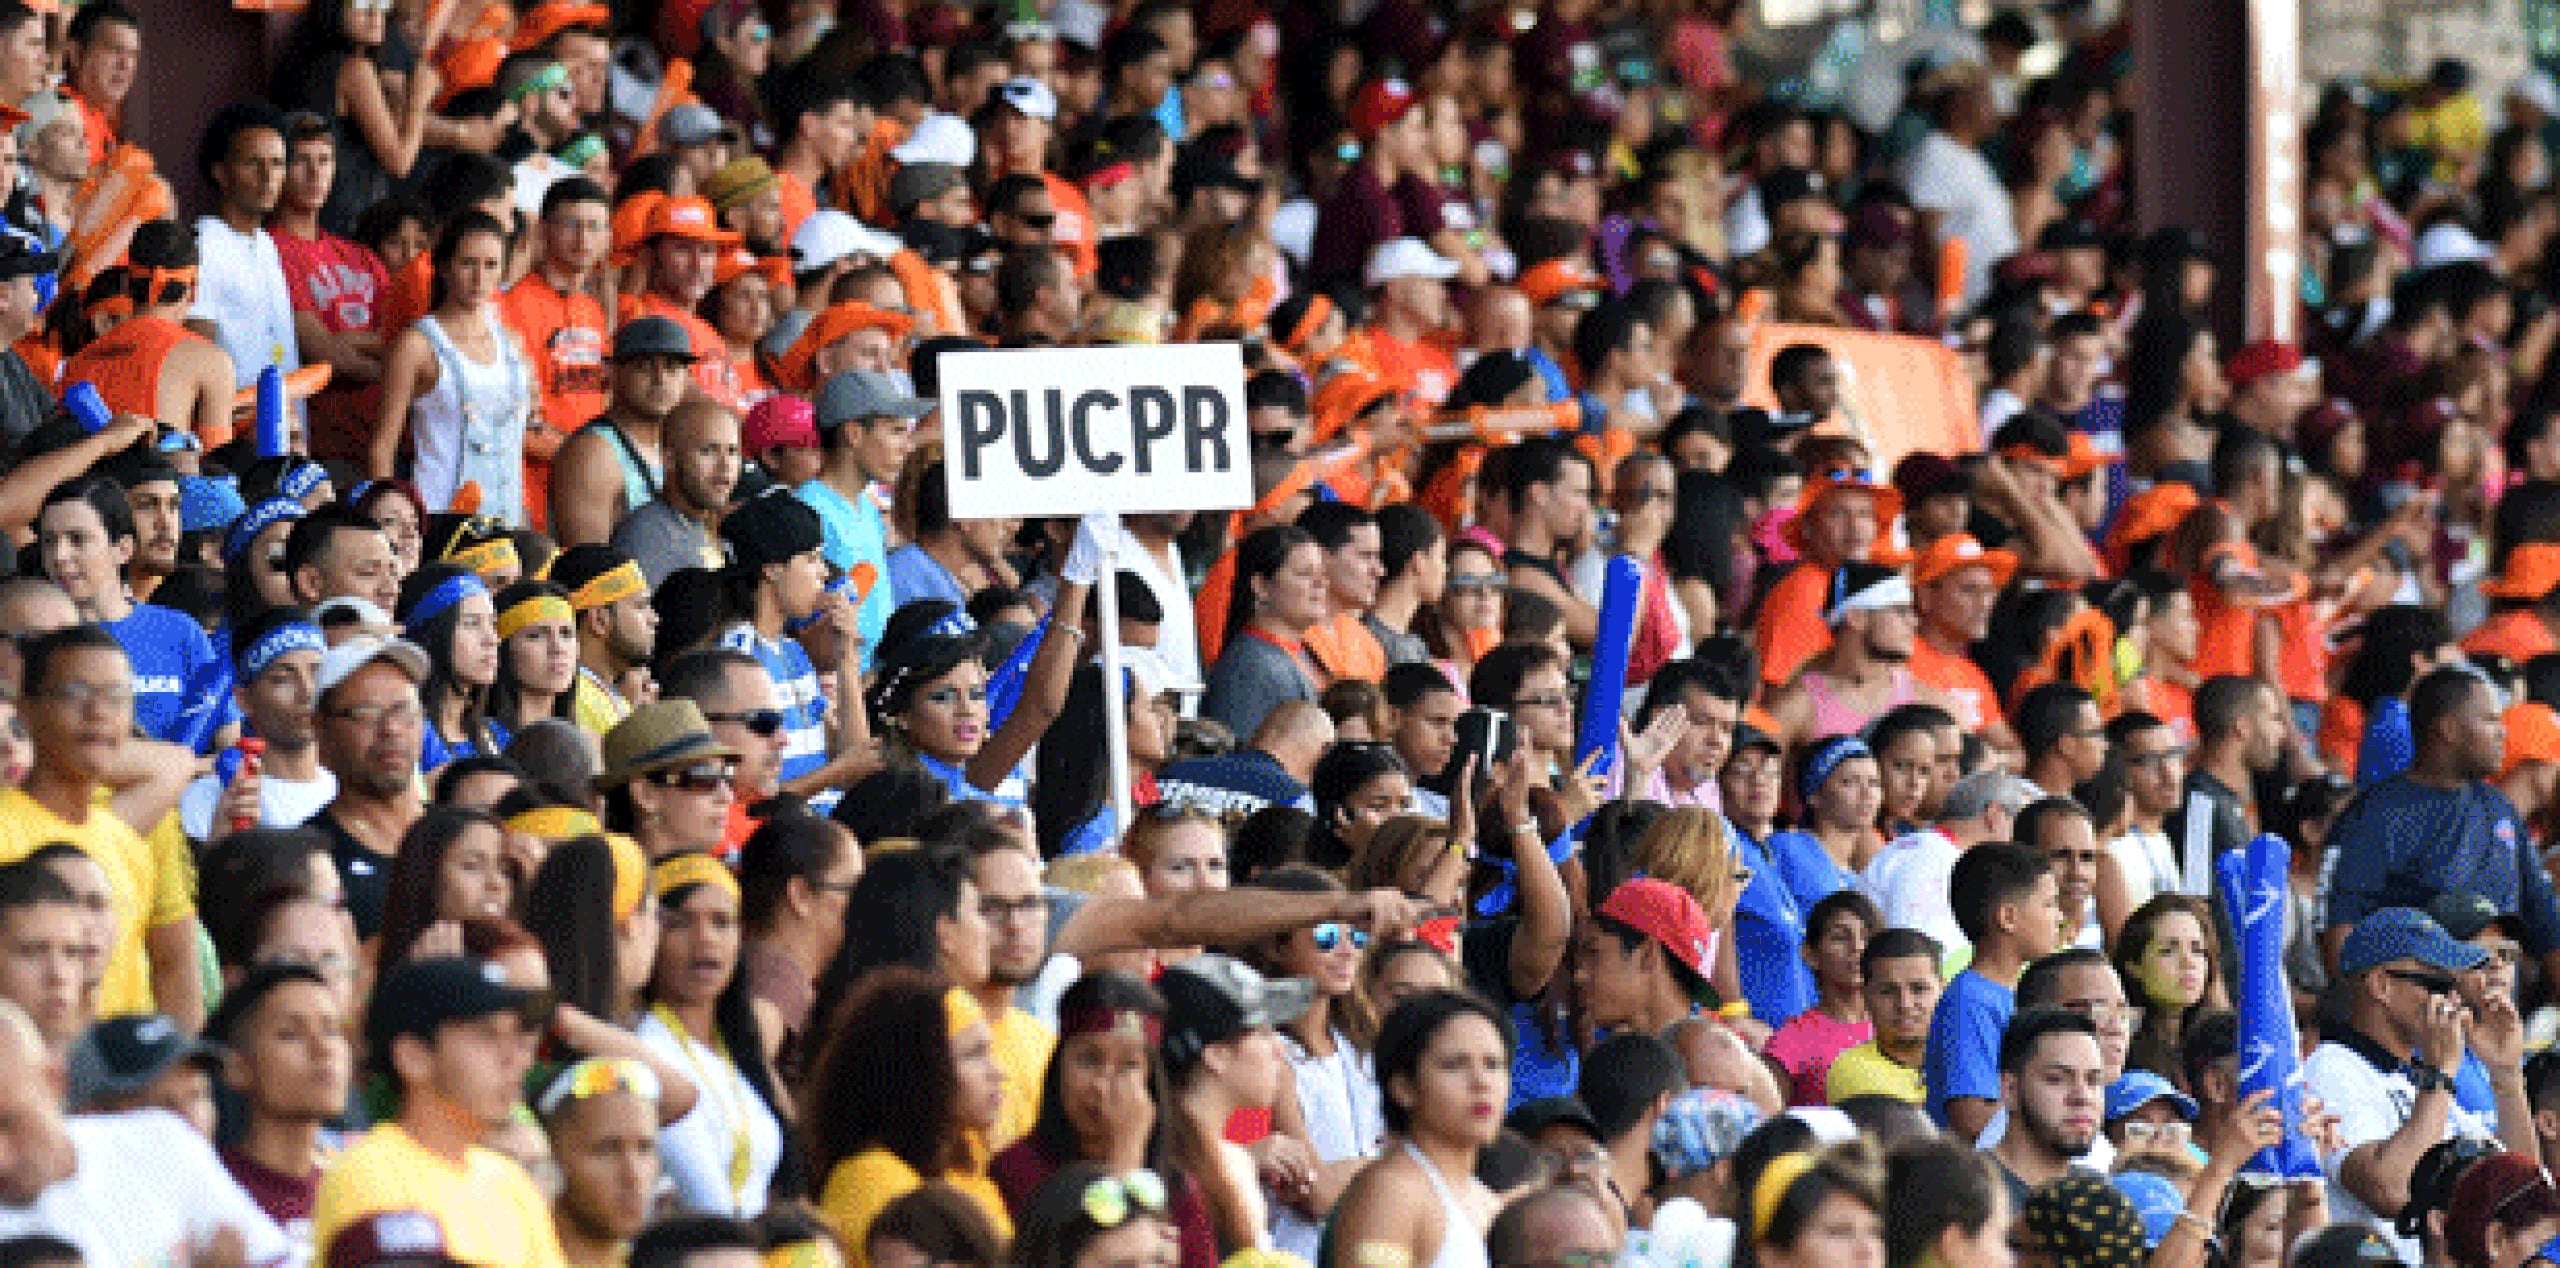 La jornada final de las Justas se celebra este sábado en el estadio Francisco “Paquito” Montaner, (andre.kang@gfrmedia.com)